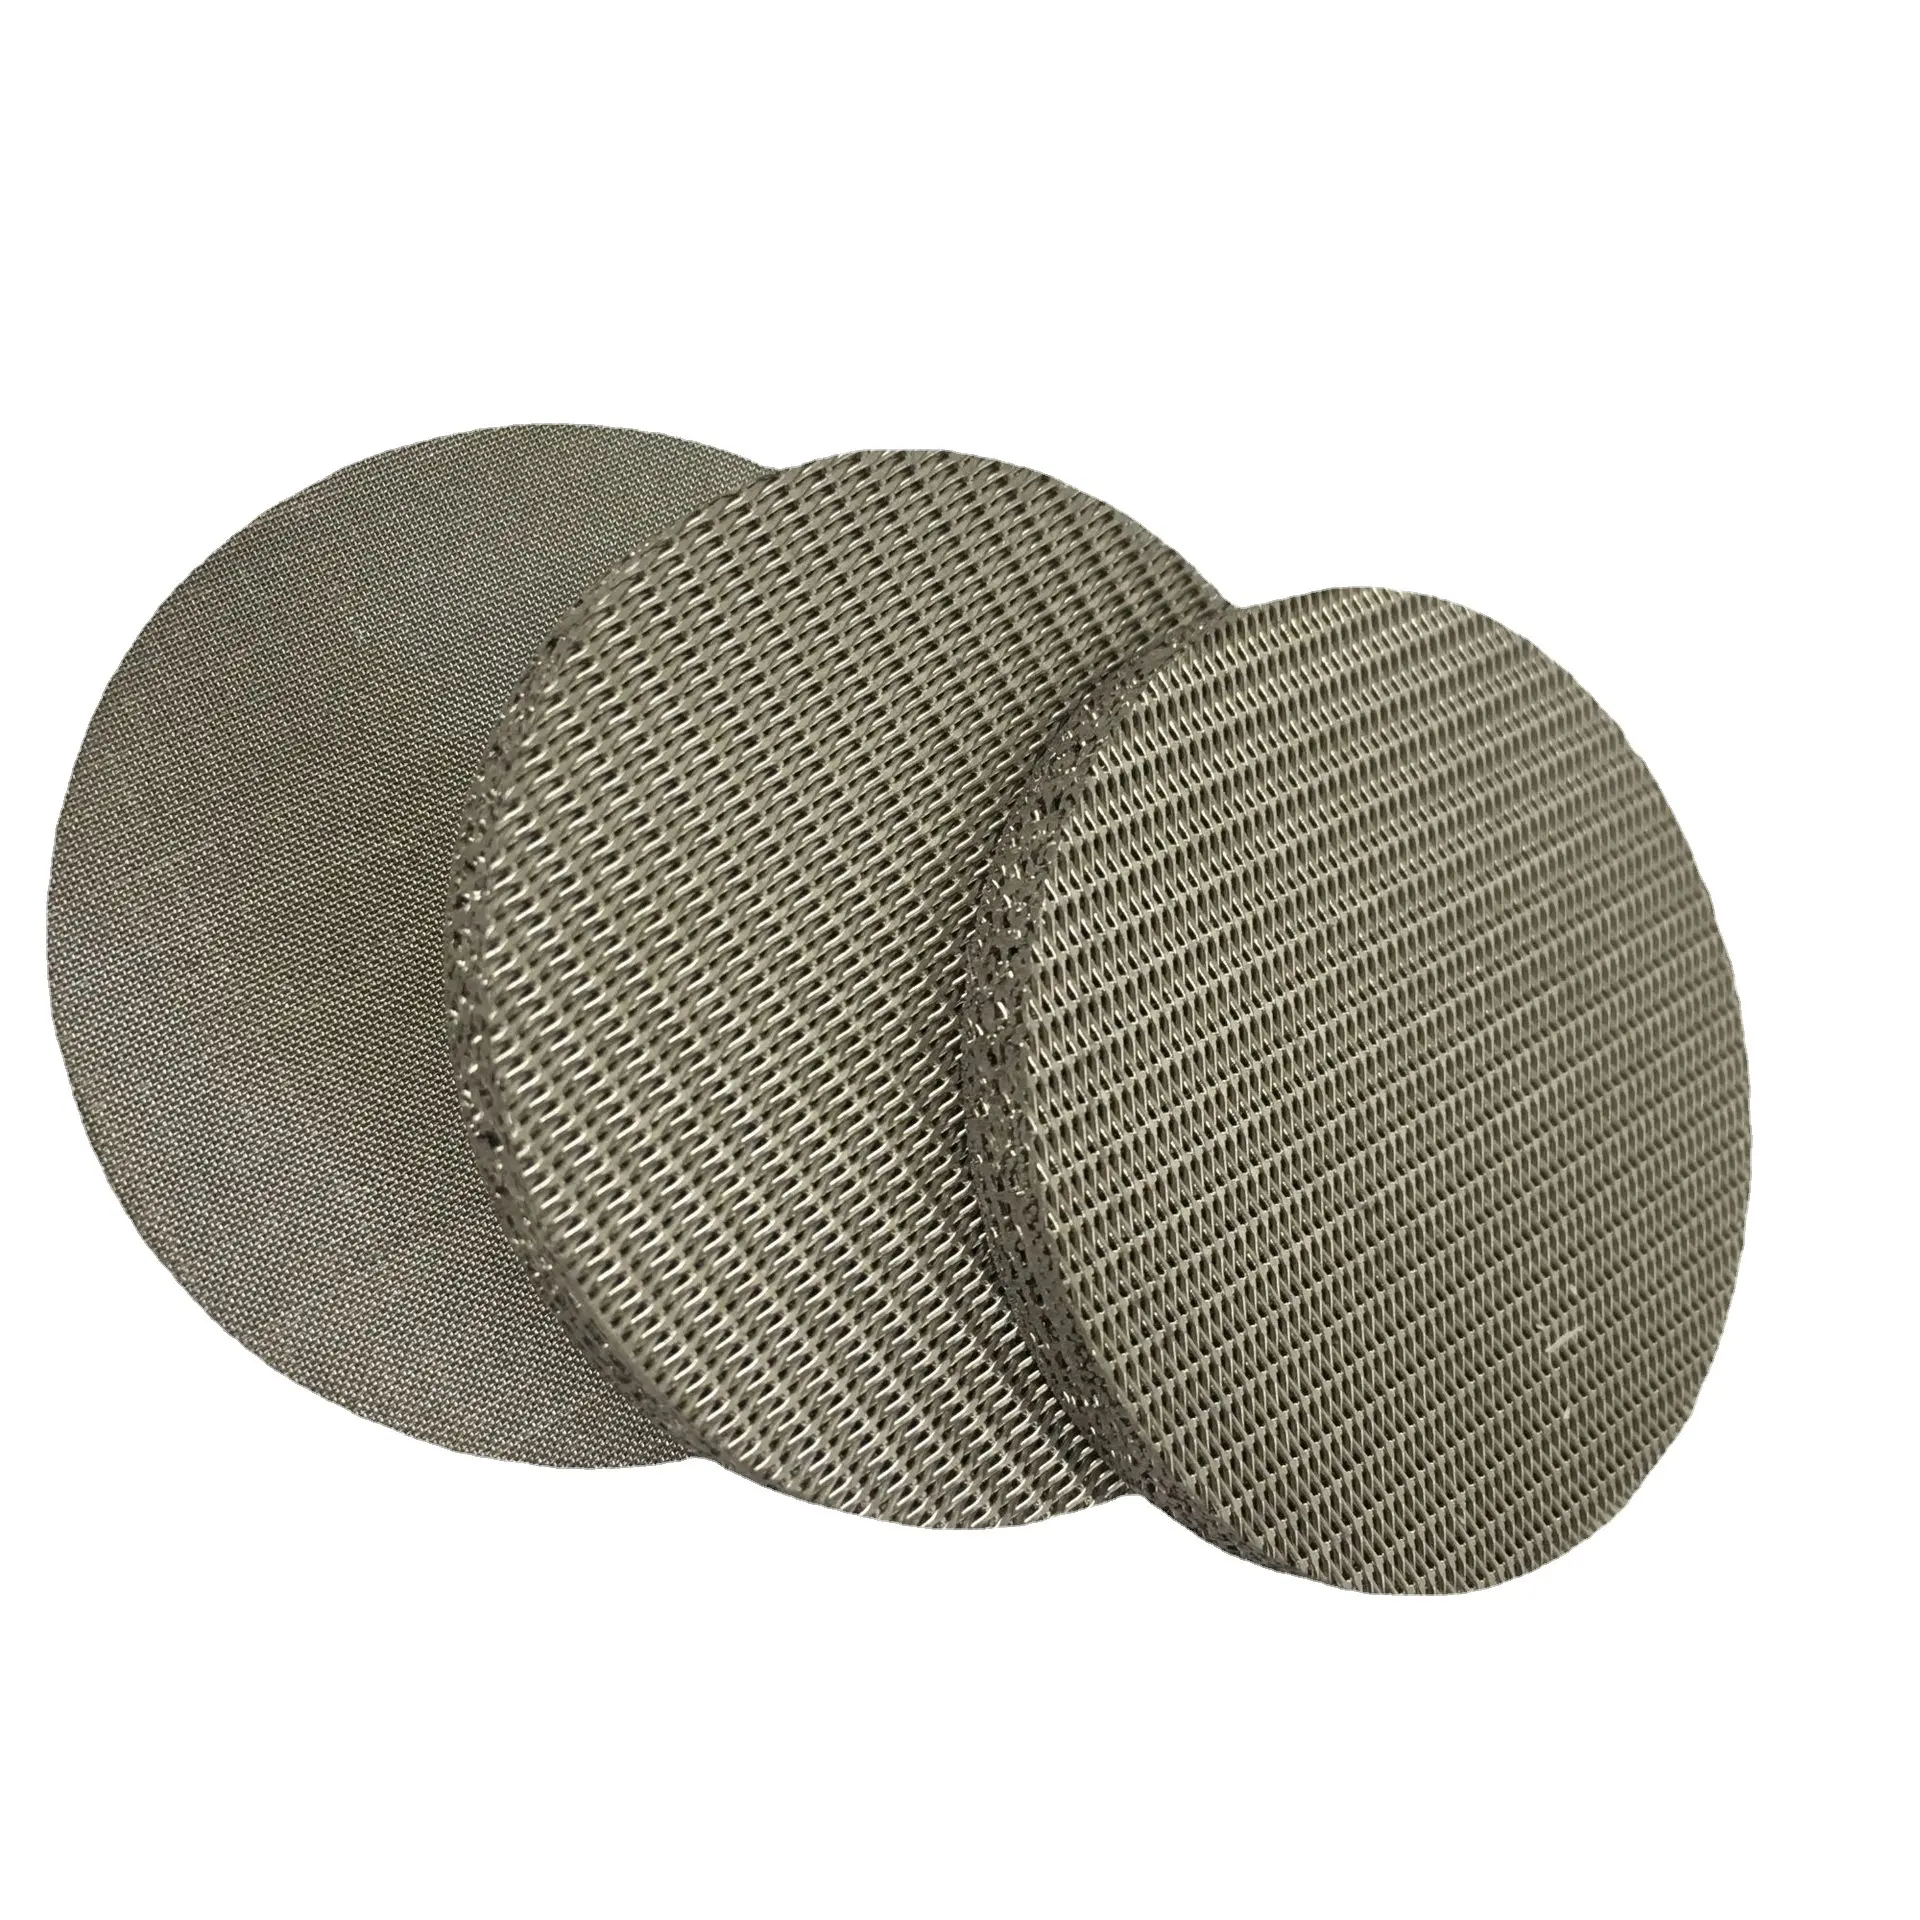 10 20 30 mikron paslanmaz çelik sinterlenmiş filtre örgü plaka/316 delikli metal sinterlenmiş tel örgü